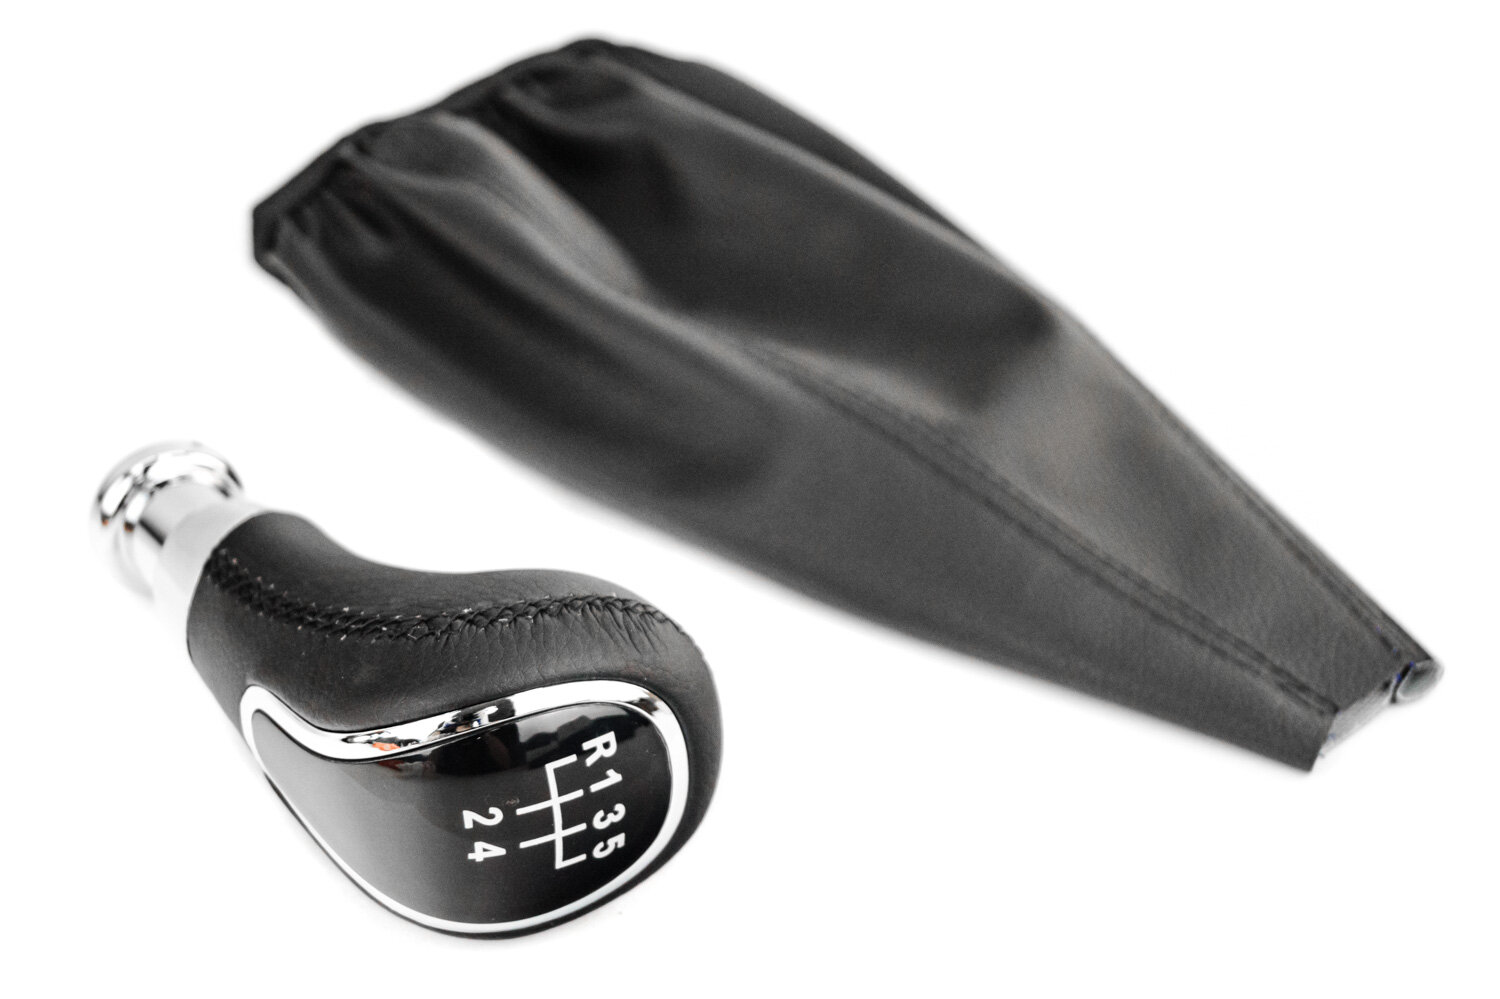 Ручка КПП Sal-Man в стиле Весты с хромированной вставкой и пыльником с черной прострочкой для ВАЗ 2108-21099